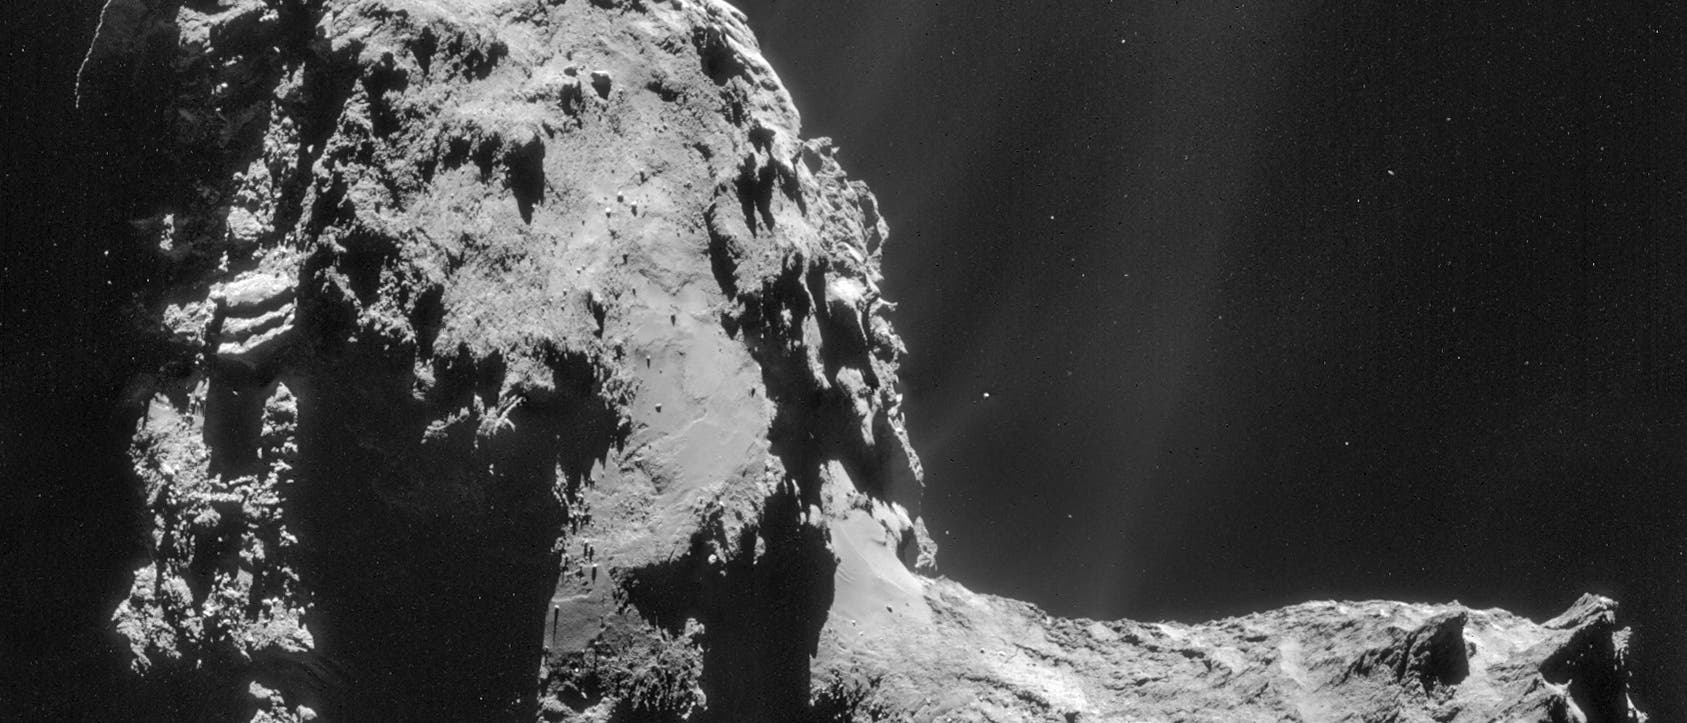 Komet 67P am 20. November 2014 (NavCam-Aufnahme)